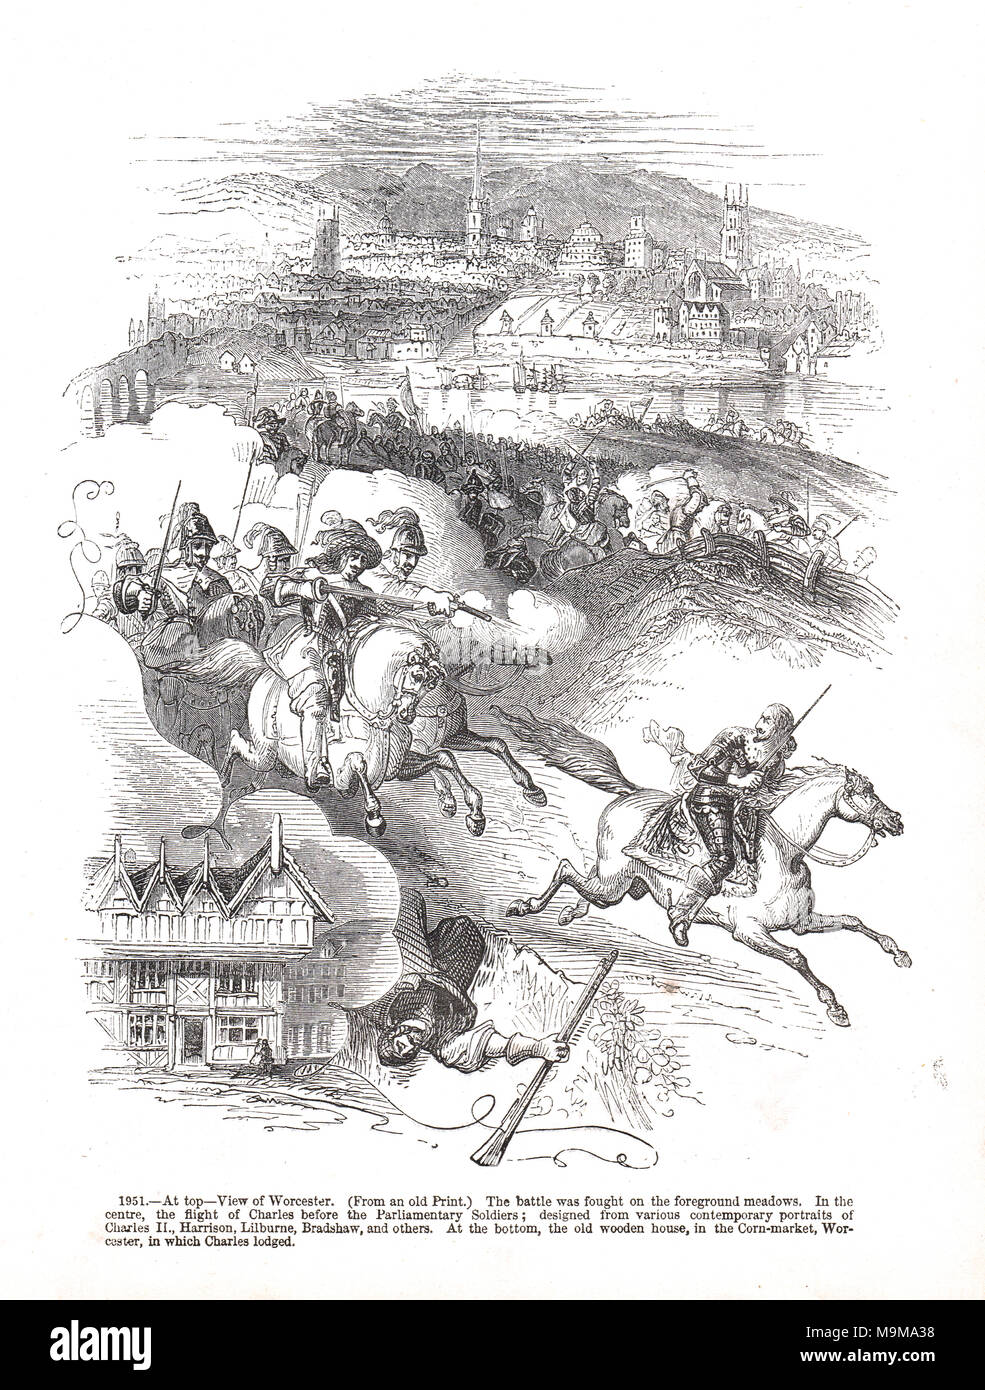 Le vol de Charles II, poursuivi par des soldats parlementaire, de la bataille de Worcester, 3 septembre 1651 Banque D'Images